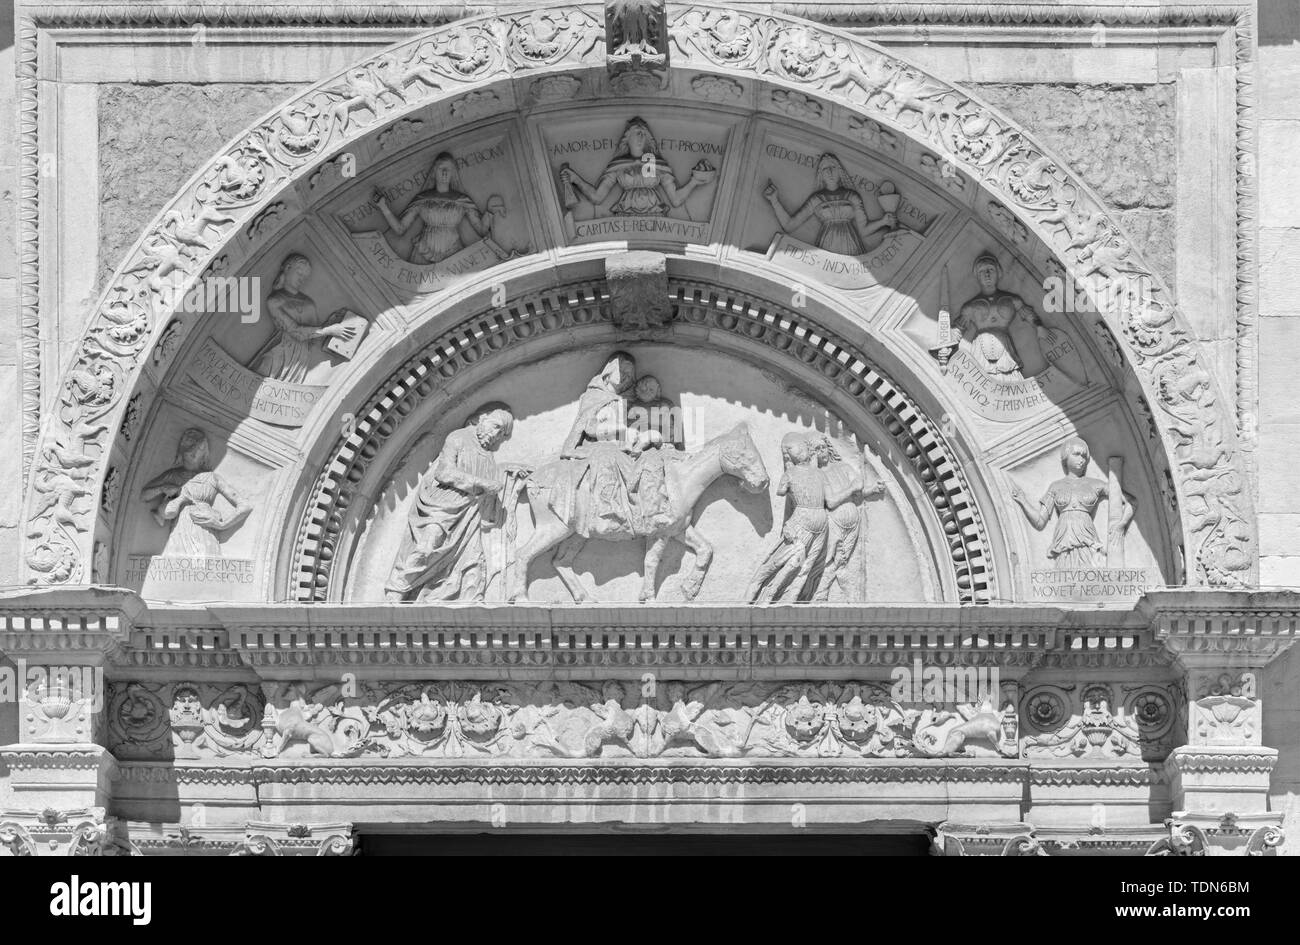 Côme, Italie - 9 mai 2015 : Le portail latéral de la cathédrale Duomo - avec le soulagement de la fuite en Egypte scène biblique. Banque D'Images